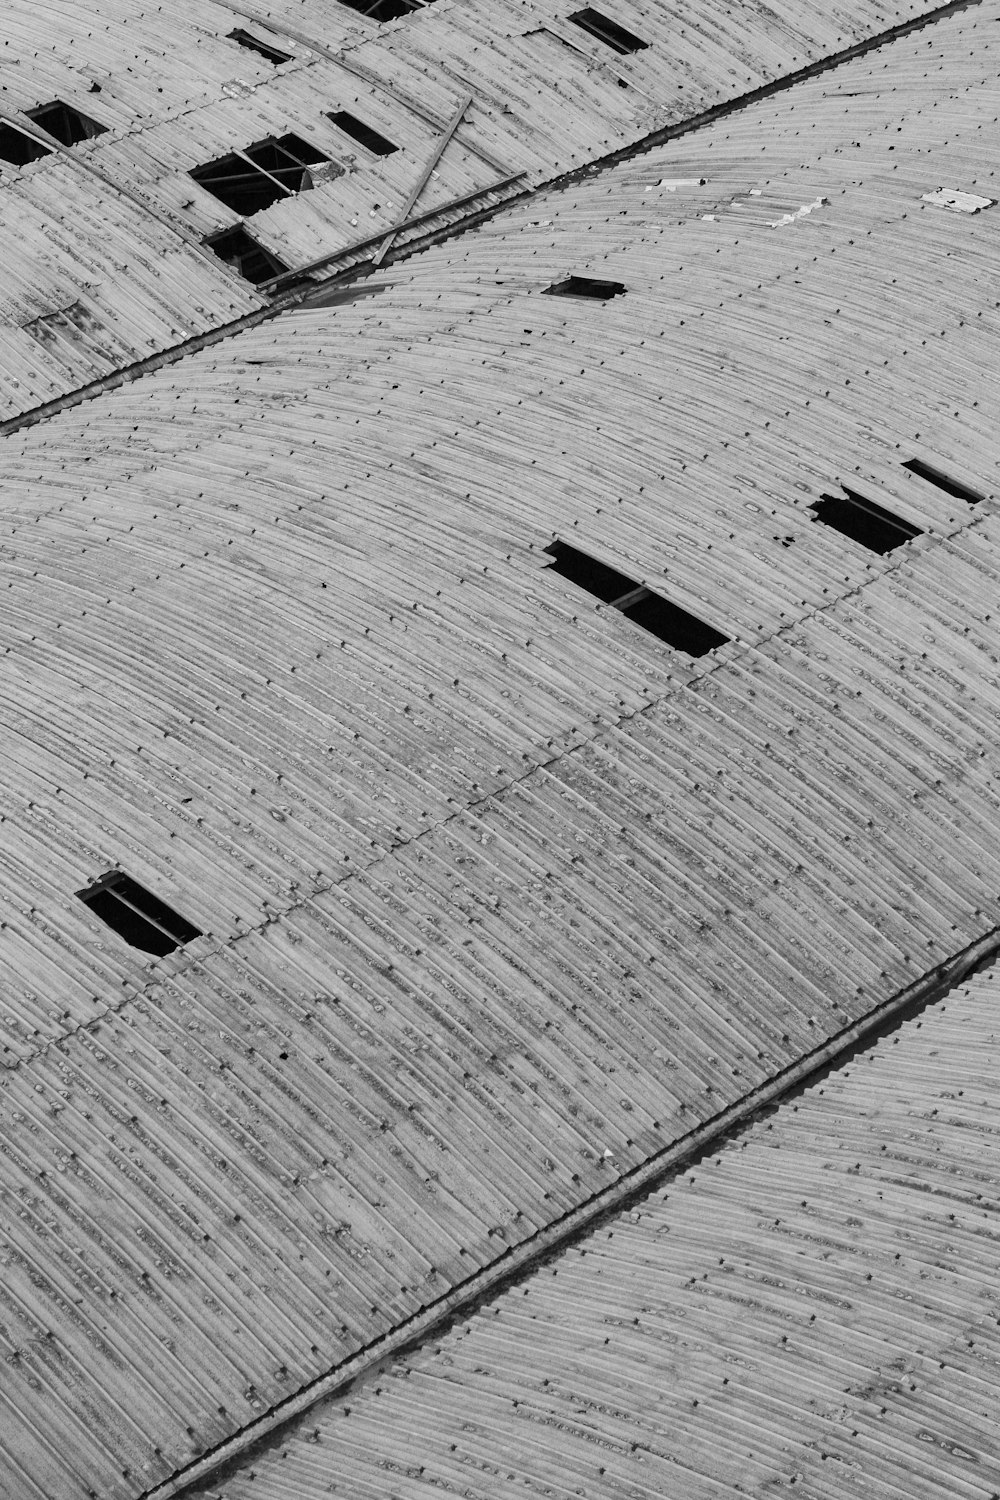 콘크리트 벽돌 바닥의 그레이스케일 사진